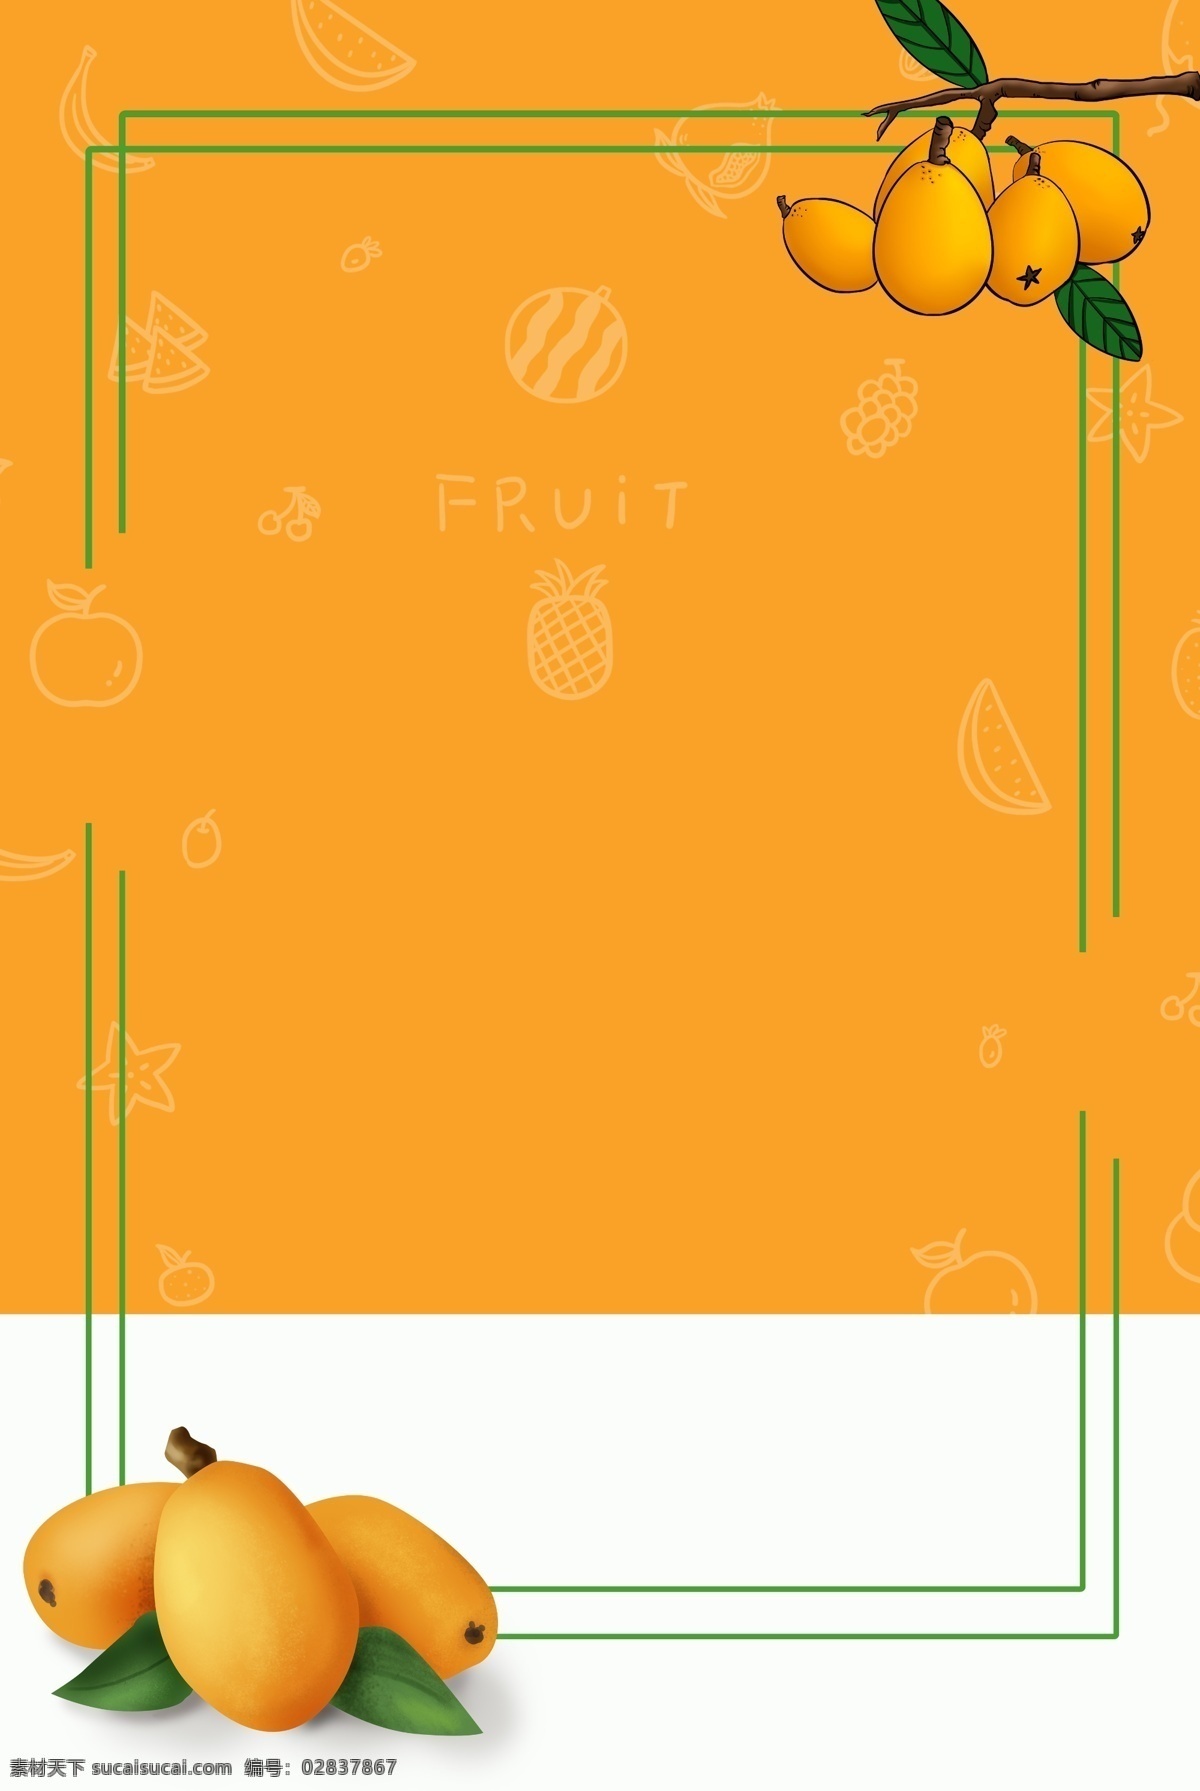 时令 水果 枇杷 背景 枇杷背景 美食 食物 橘色 橘色背景